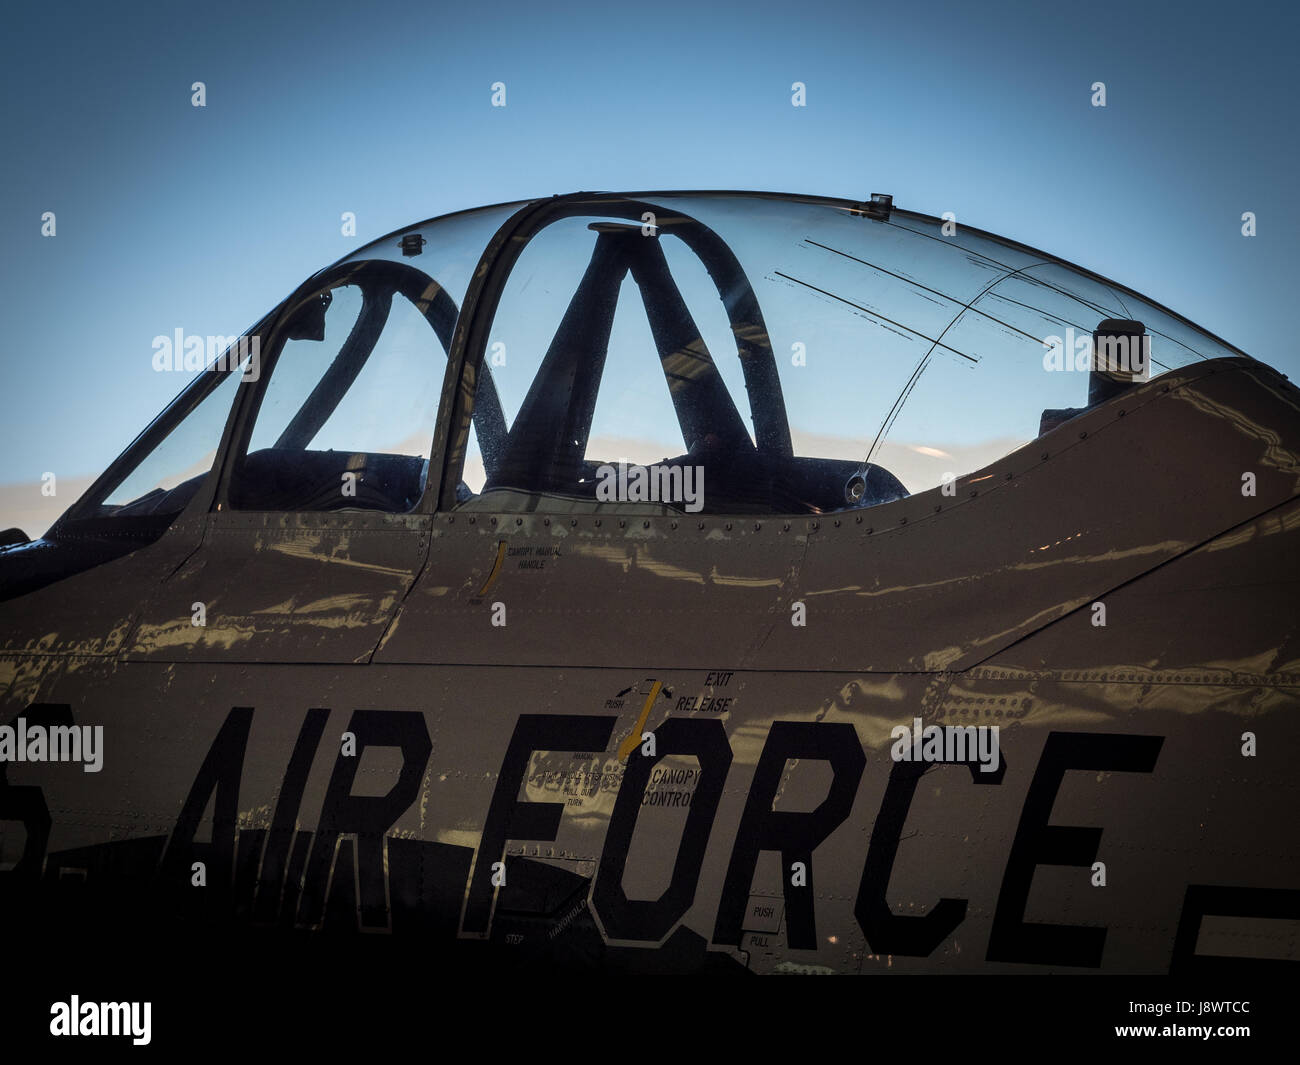 Dettaglio stilizzata di un air force jet cockpit Foto Stock